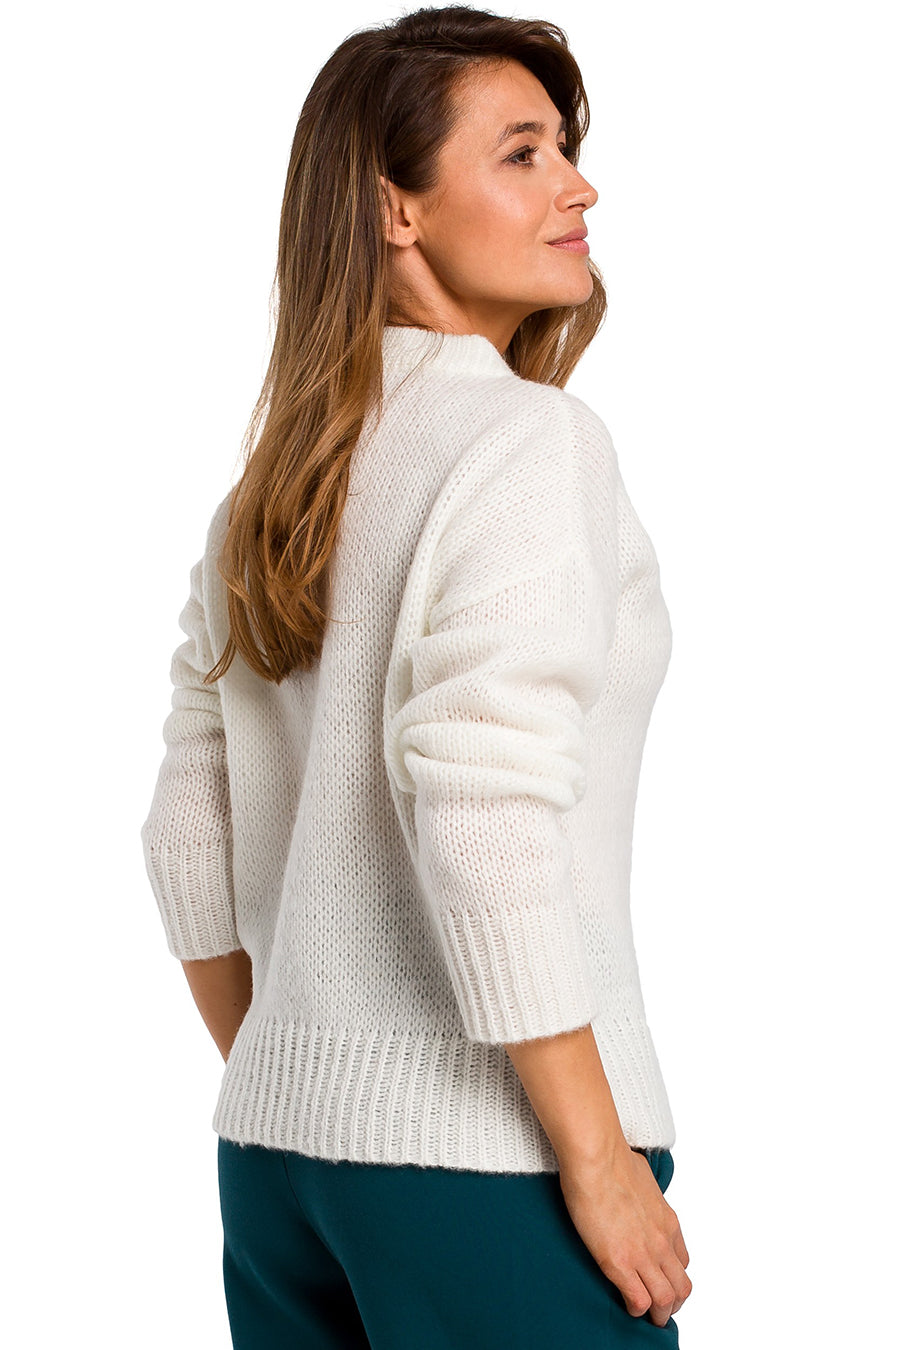 Дамски пуловер Kalama, Бял 4